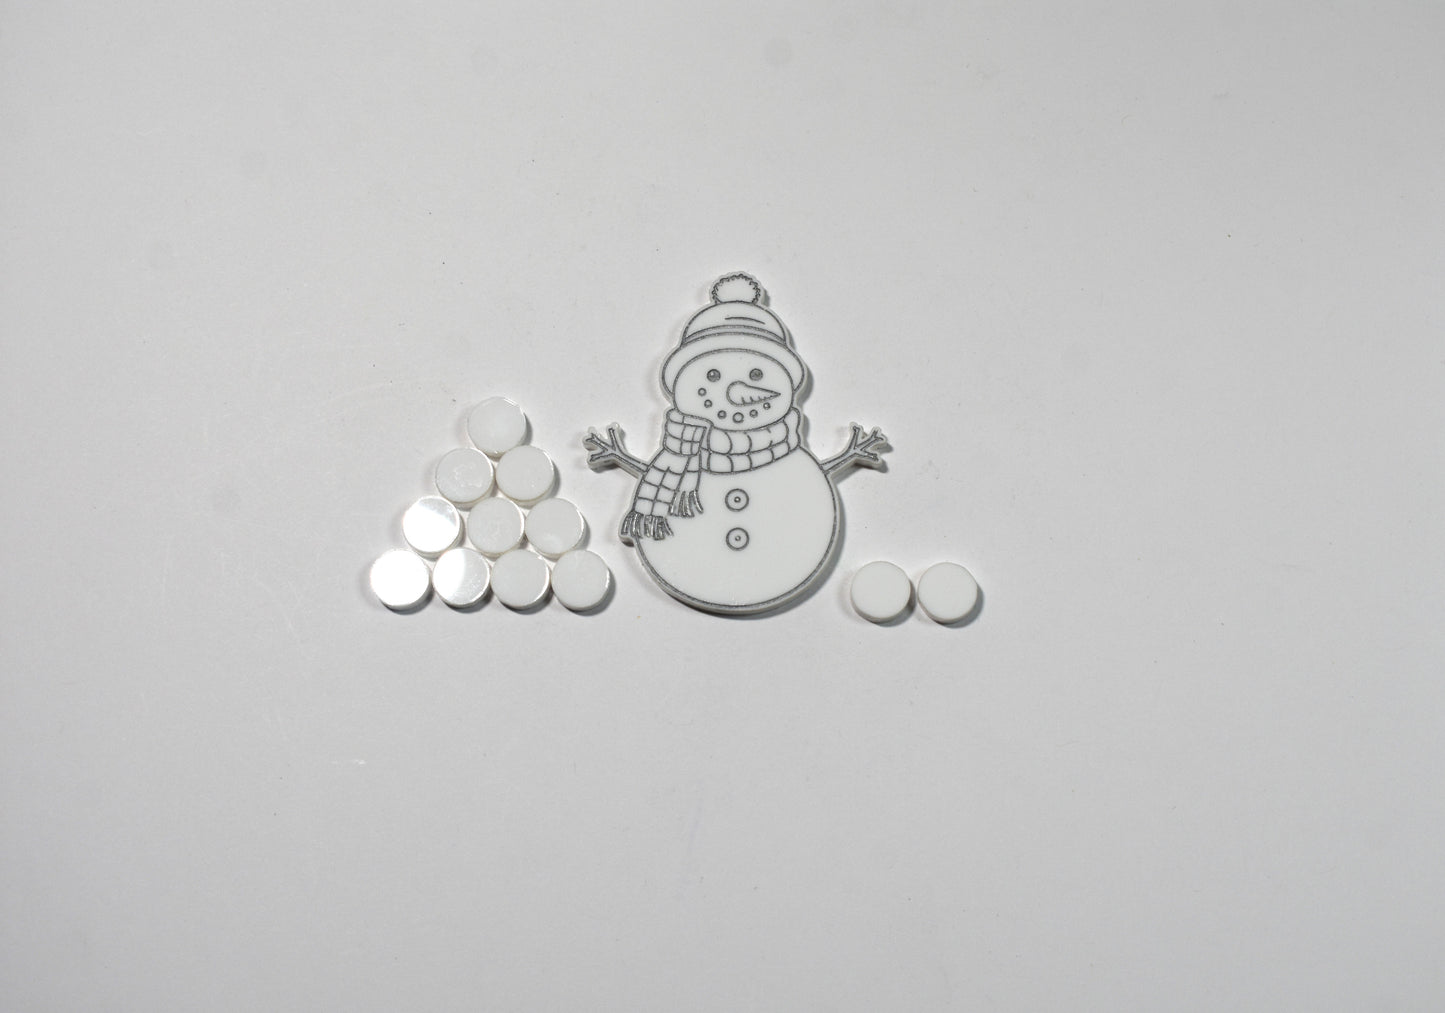 Snowman and snowballs - Creative Designs By Kari